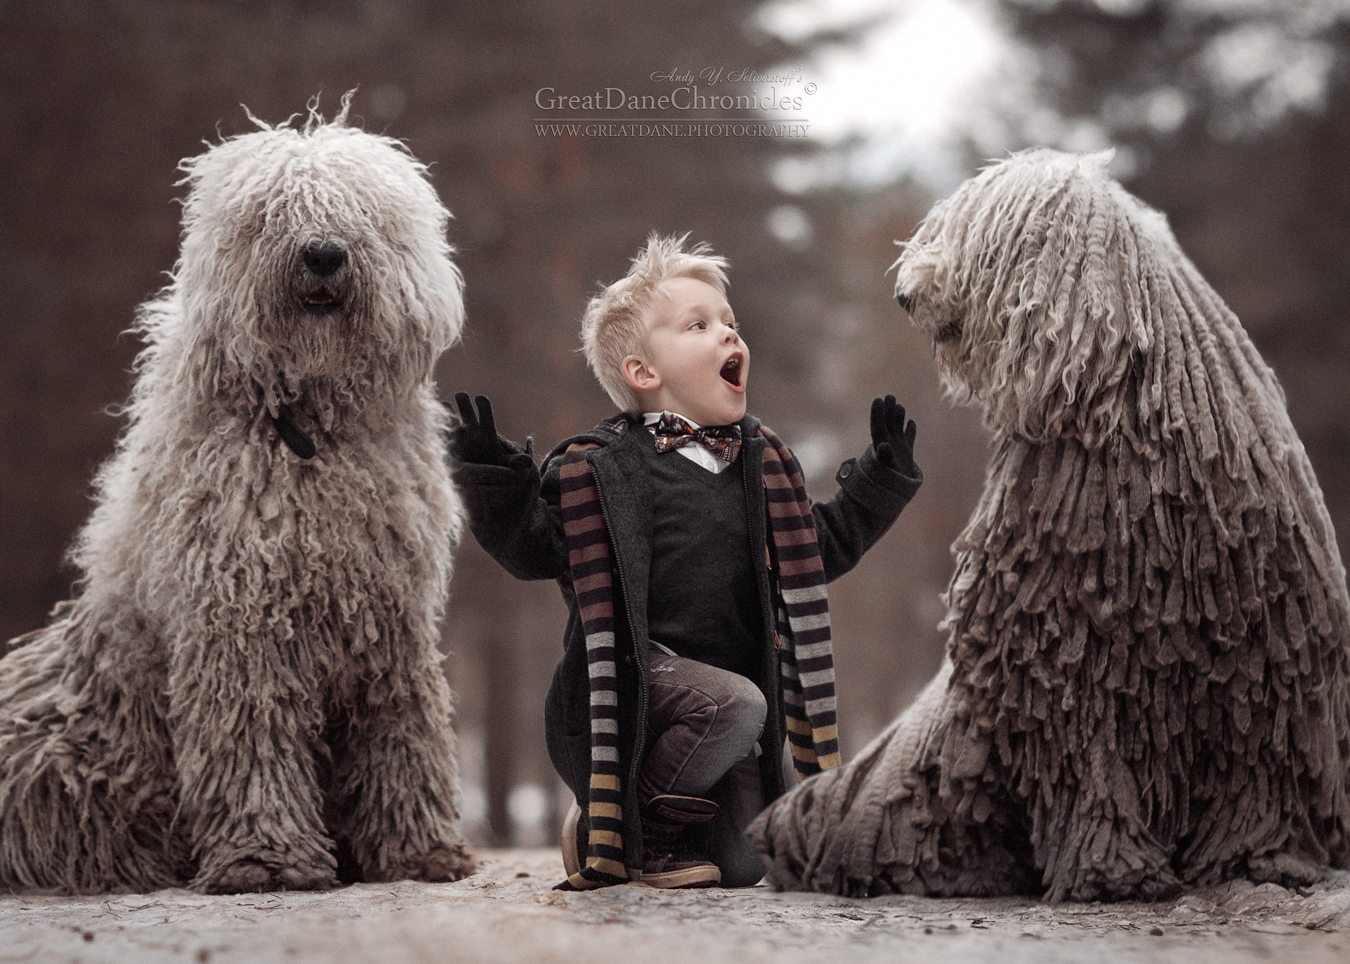 Фото Мальчик сидит между двумя комондорами, фотограф Андрей Селиверстов